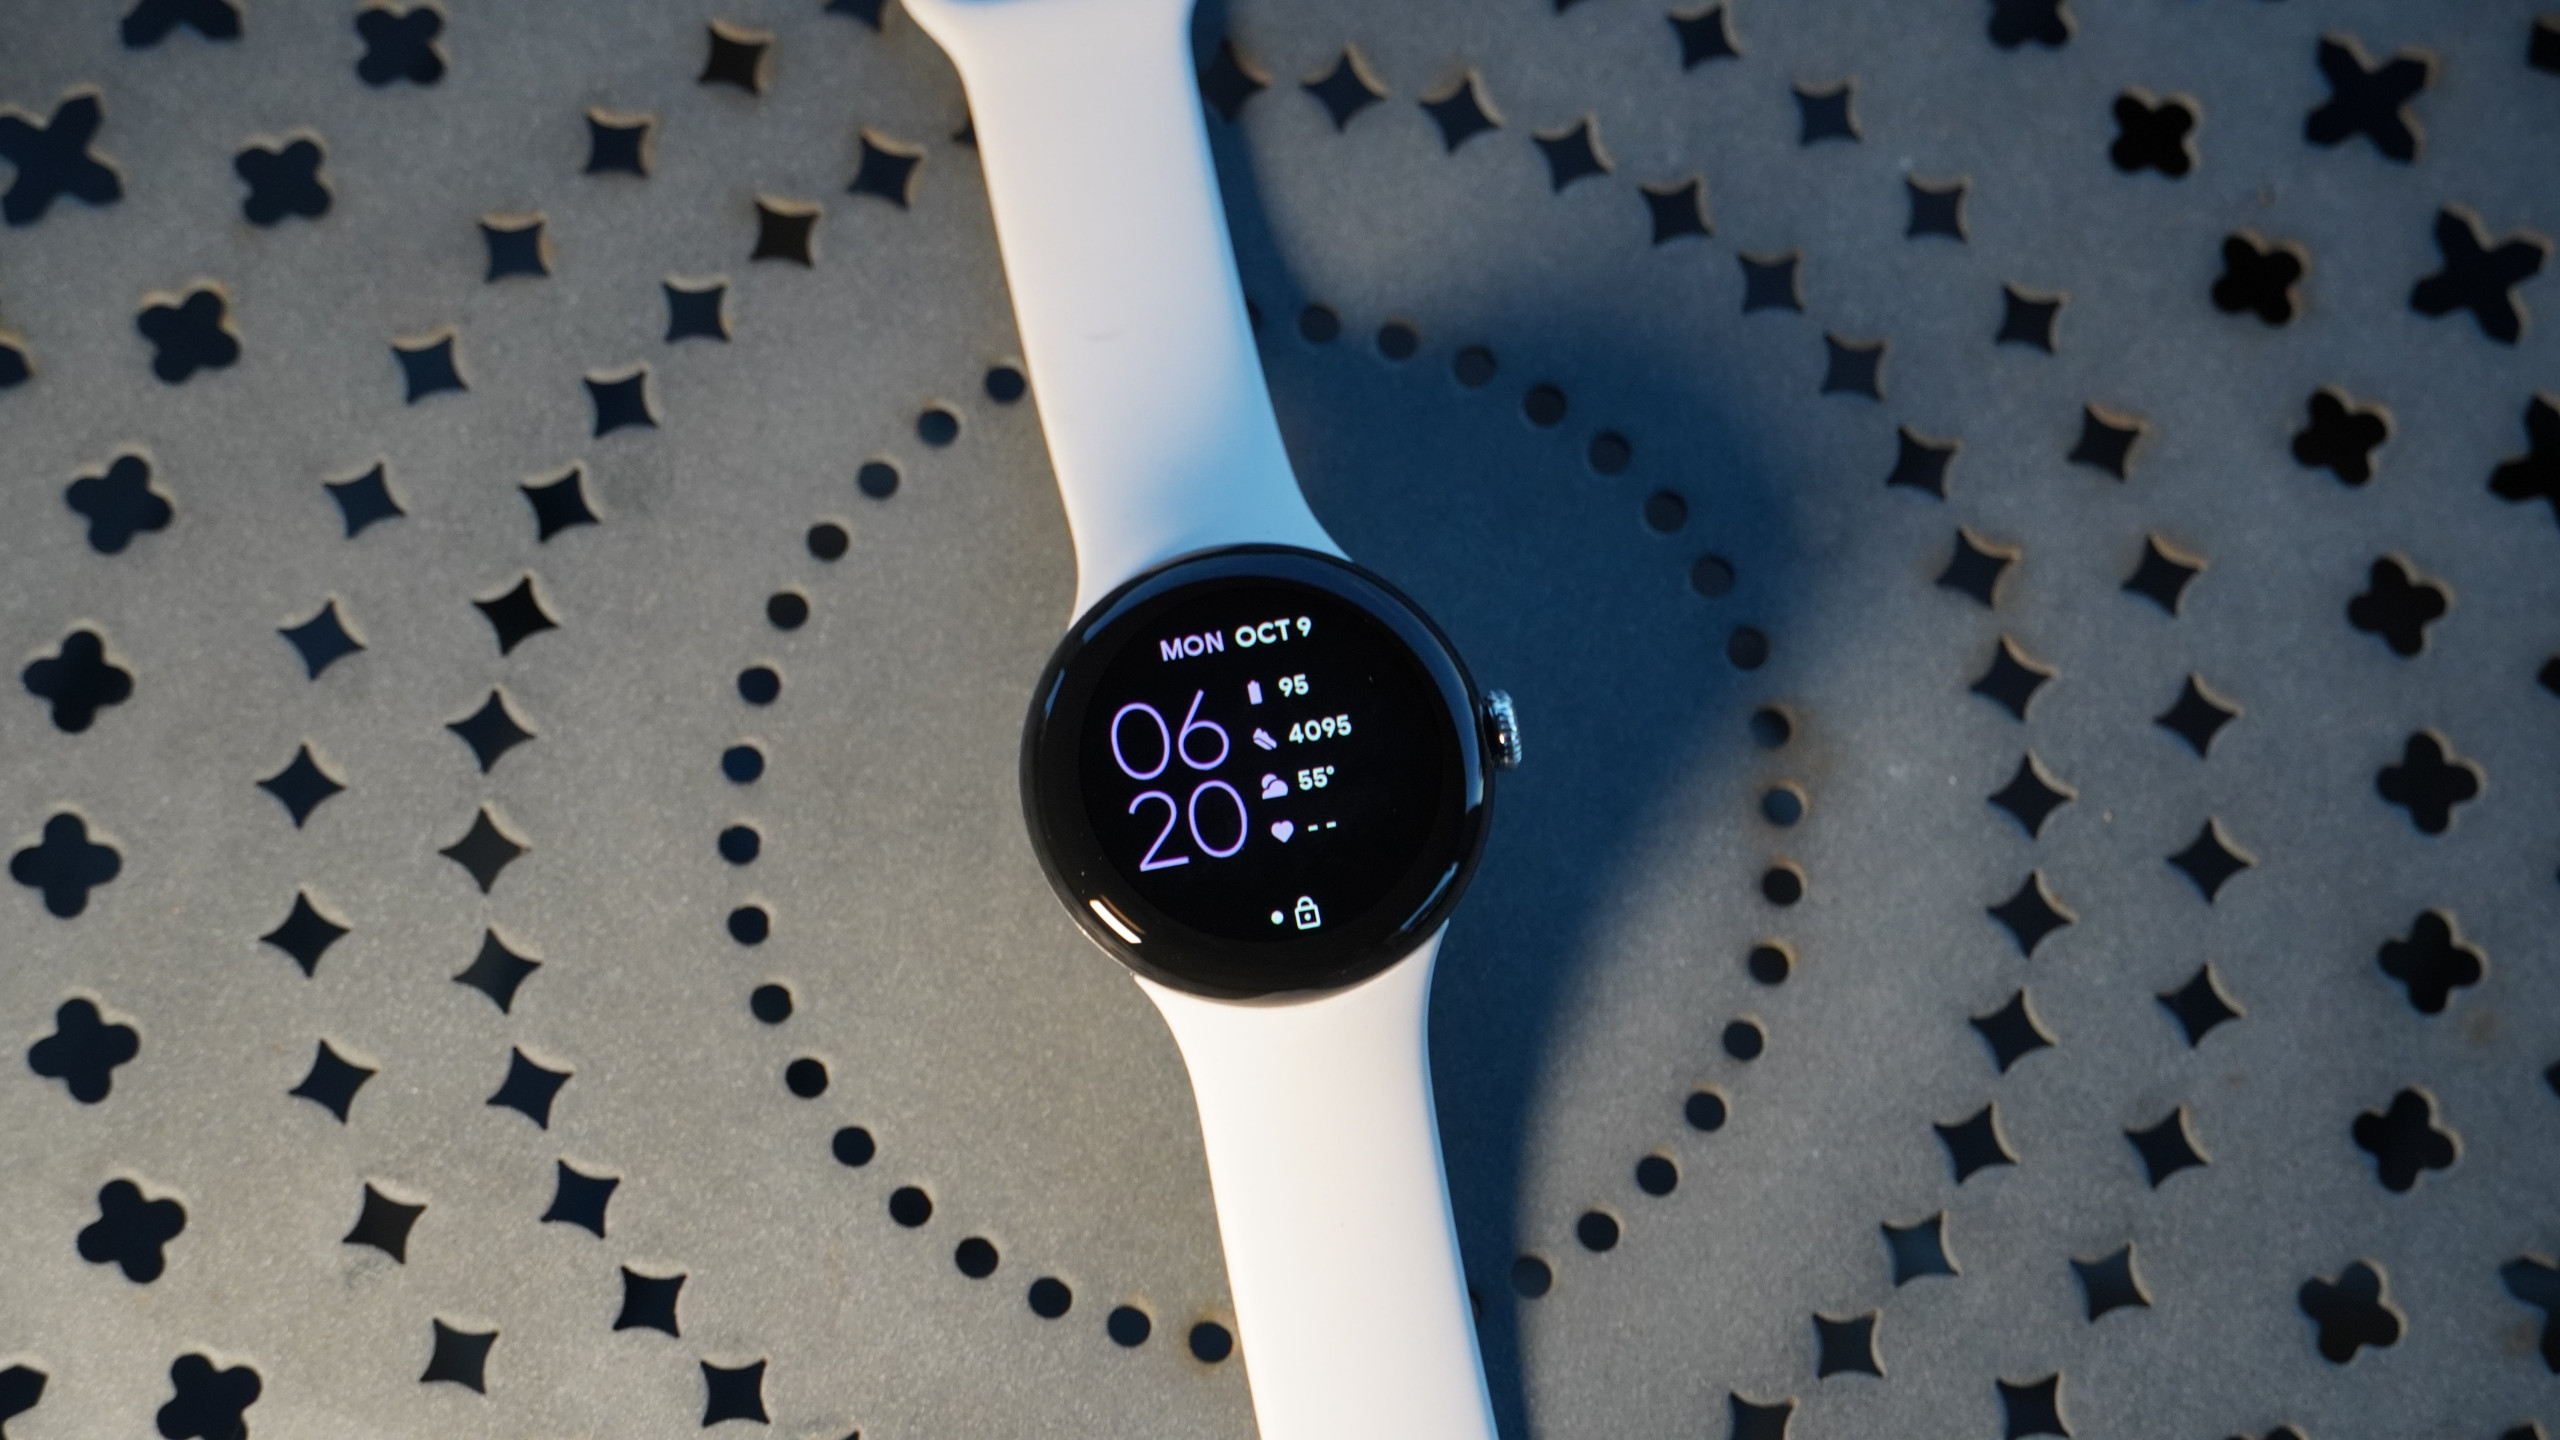 Vista de cima da tela e pulseira do smartwatch Google Pixel Watch 2 branco